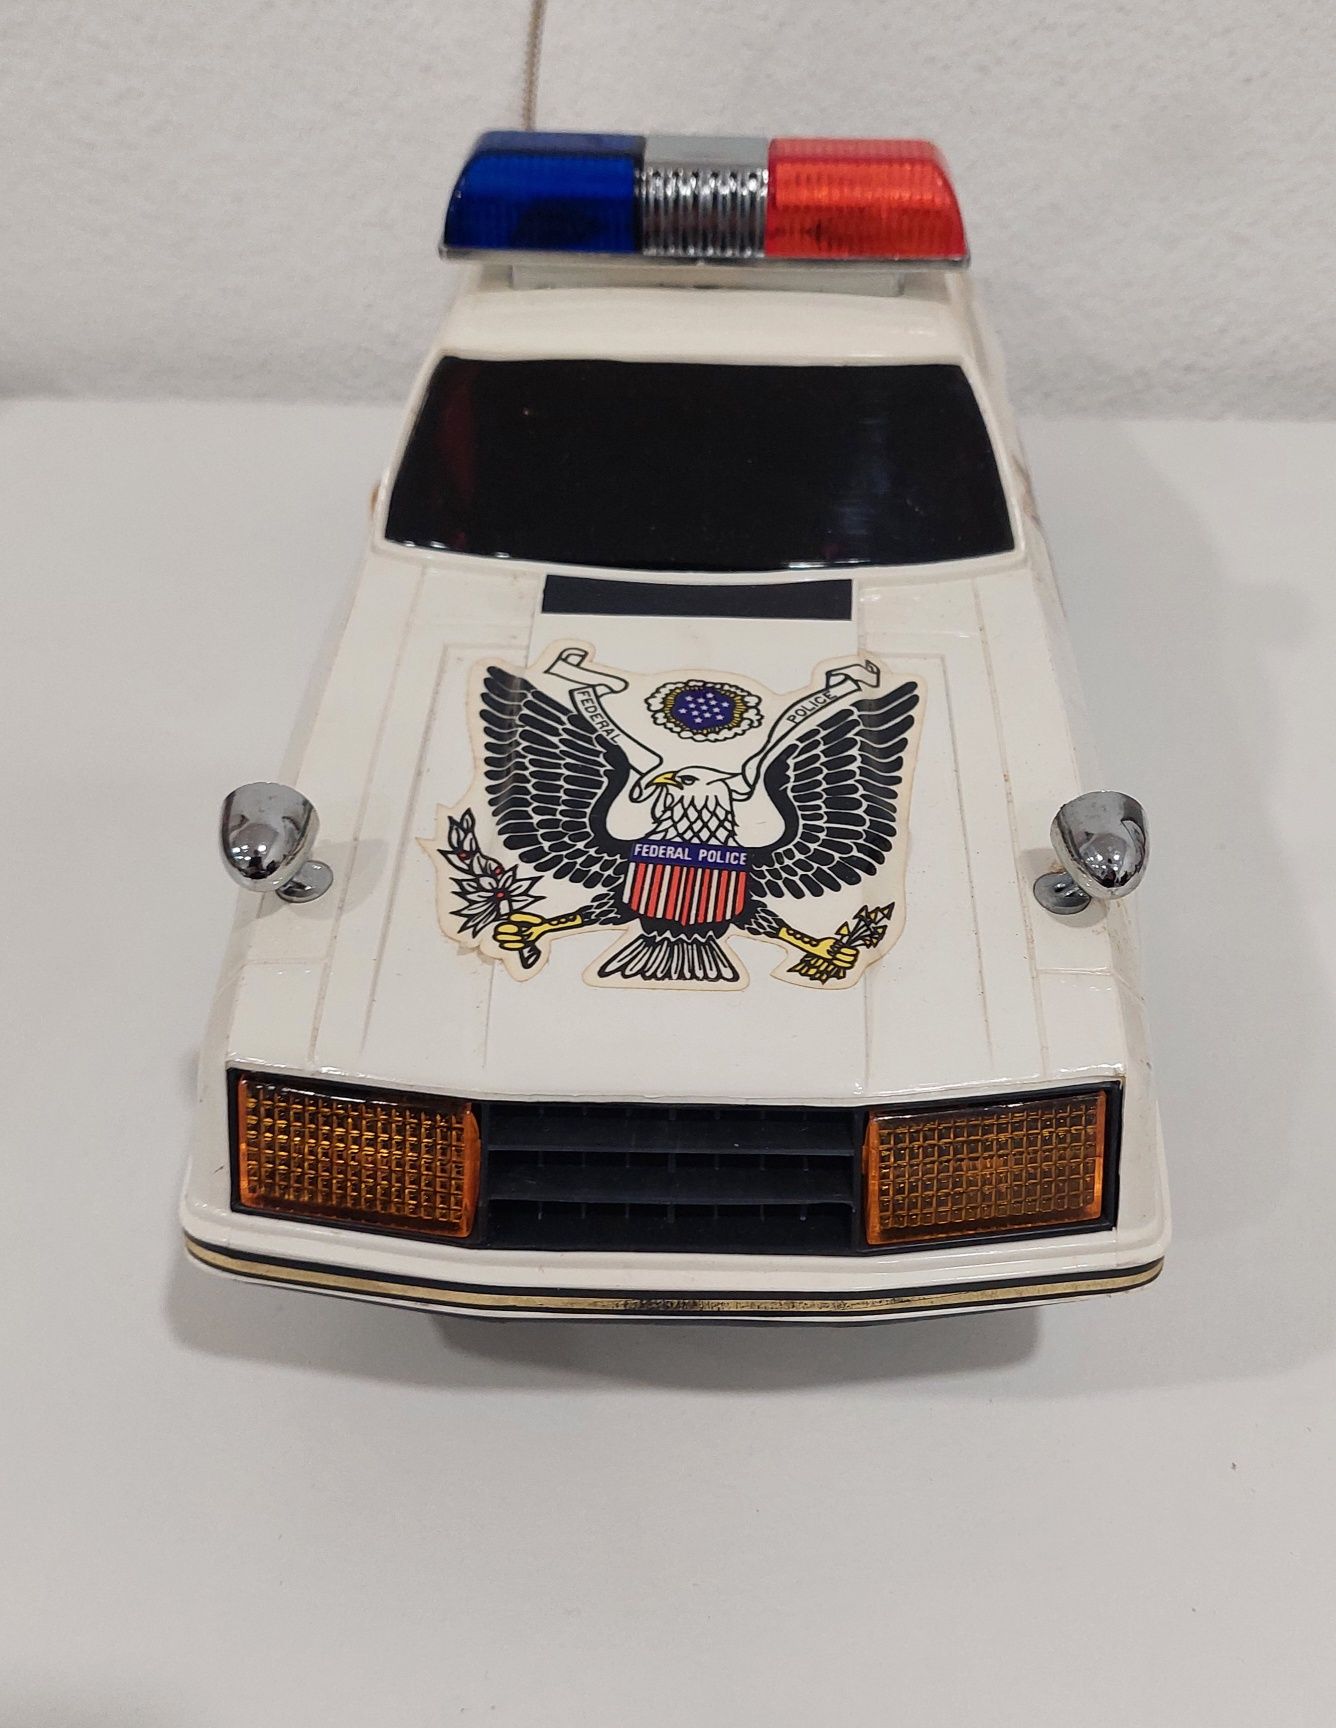 Brinquedo carro de polícia década de 80 NOVO ainda na caixa